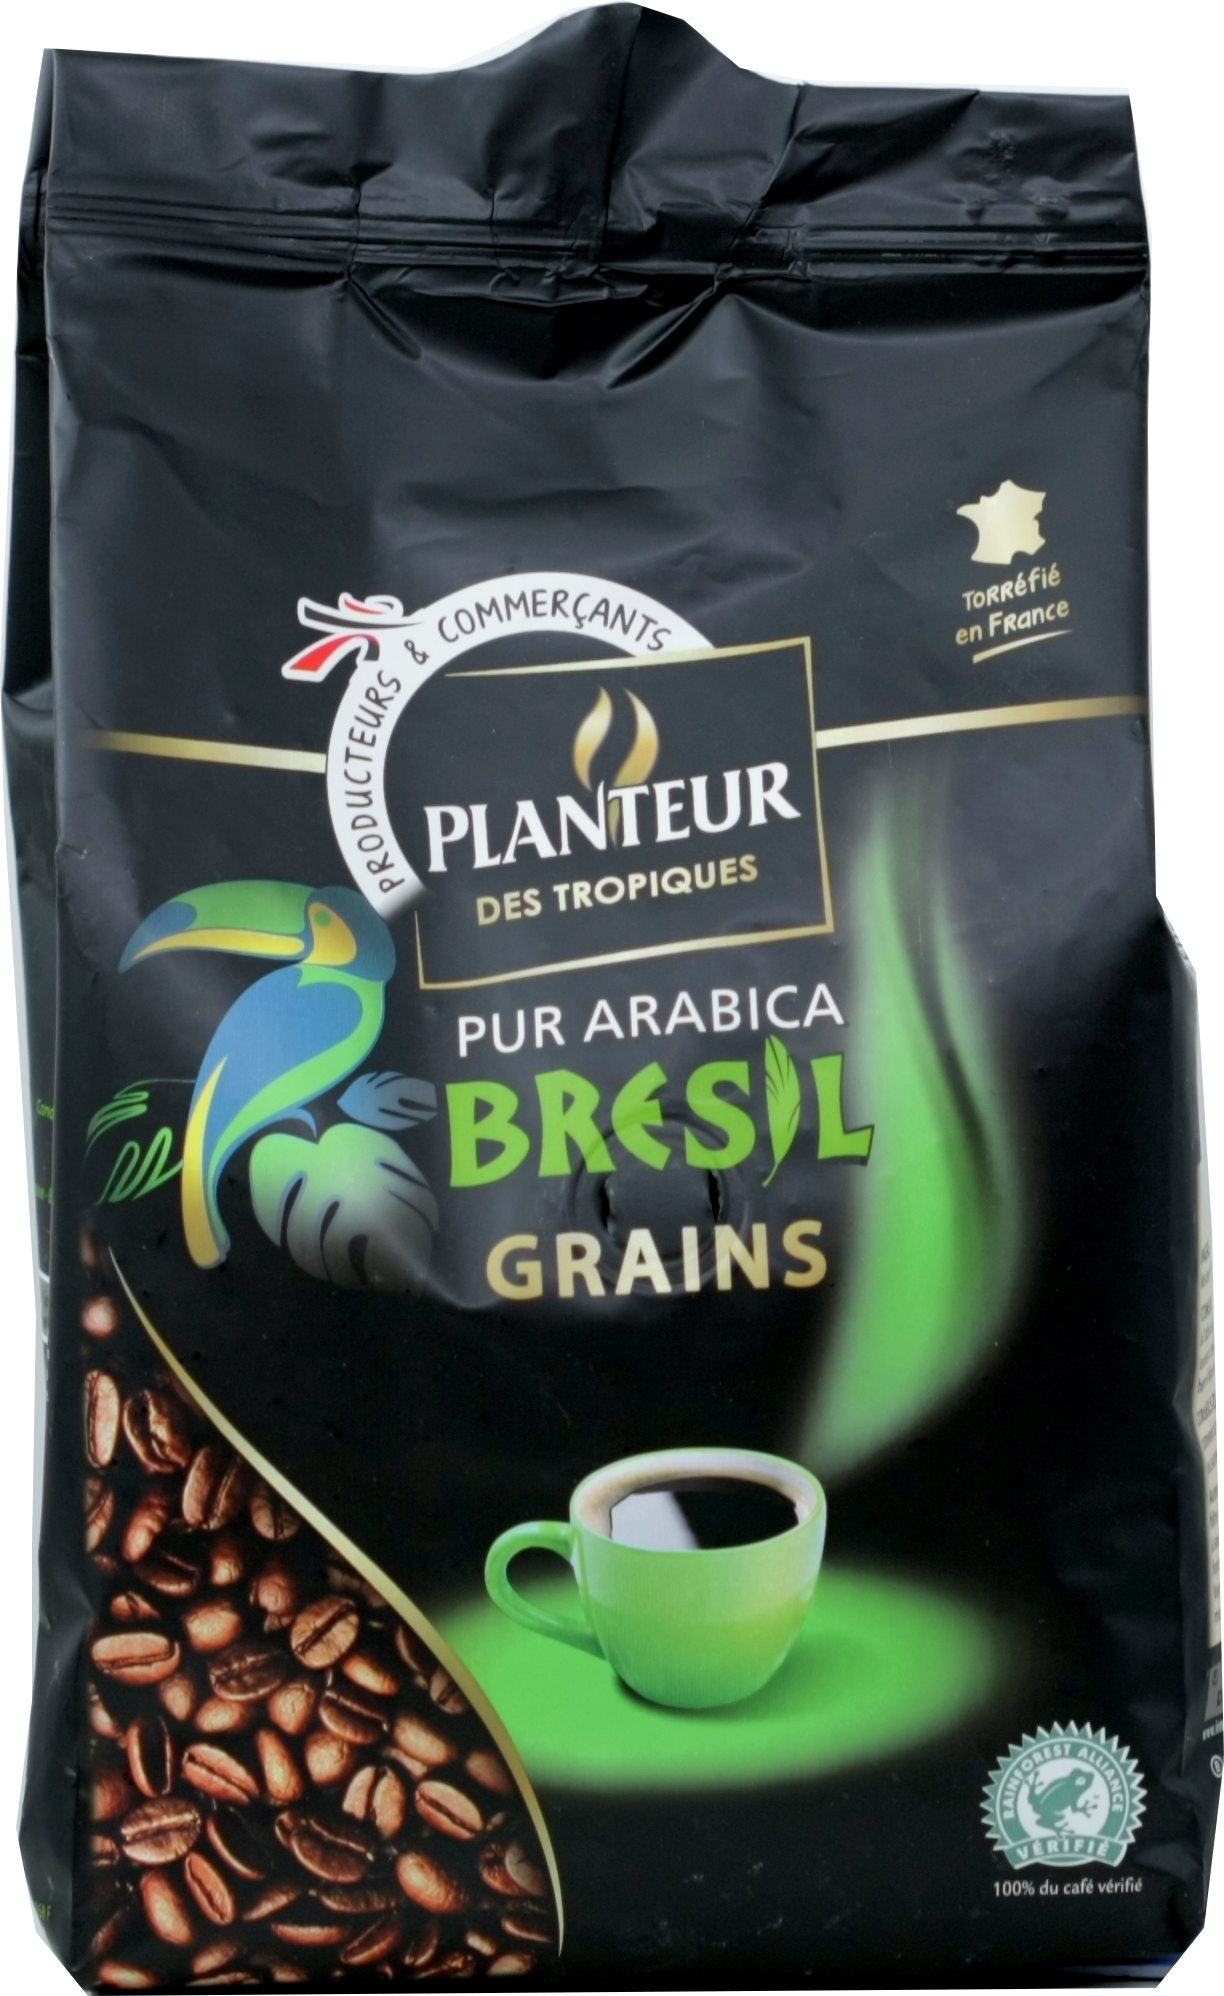 Planteur des Tropiques. Bresil зерно 500 гр. мягкая упаковка